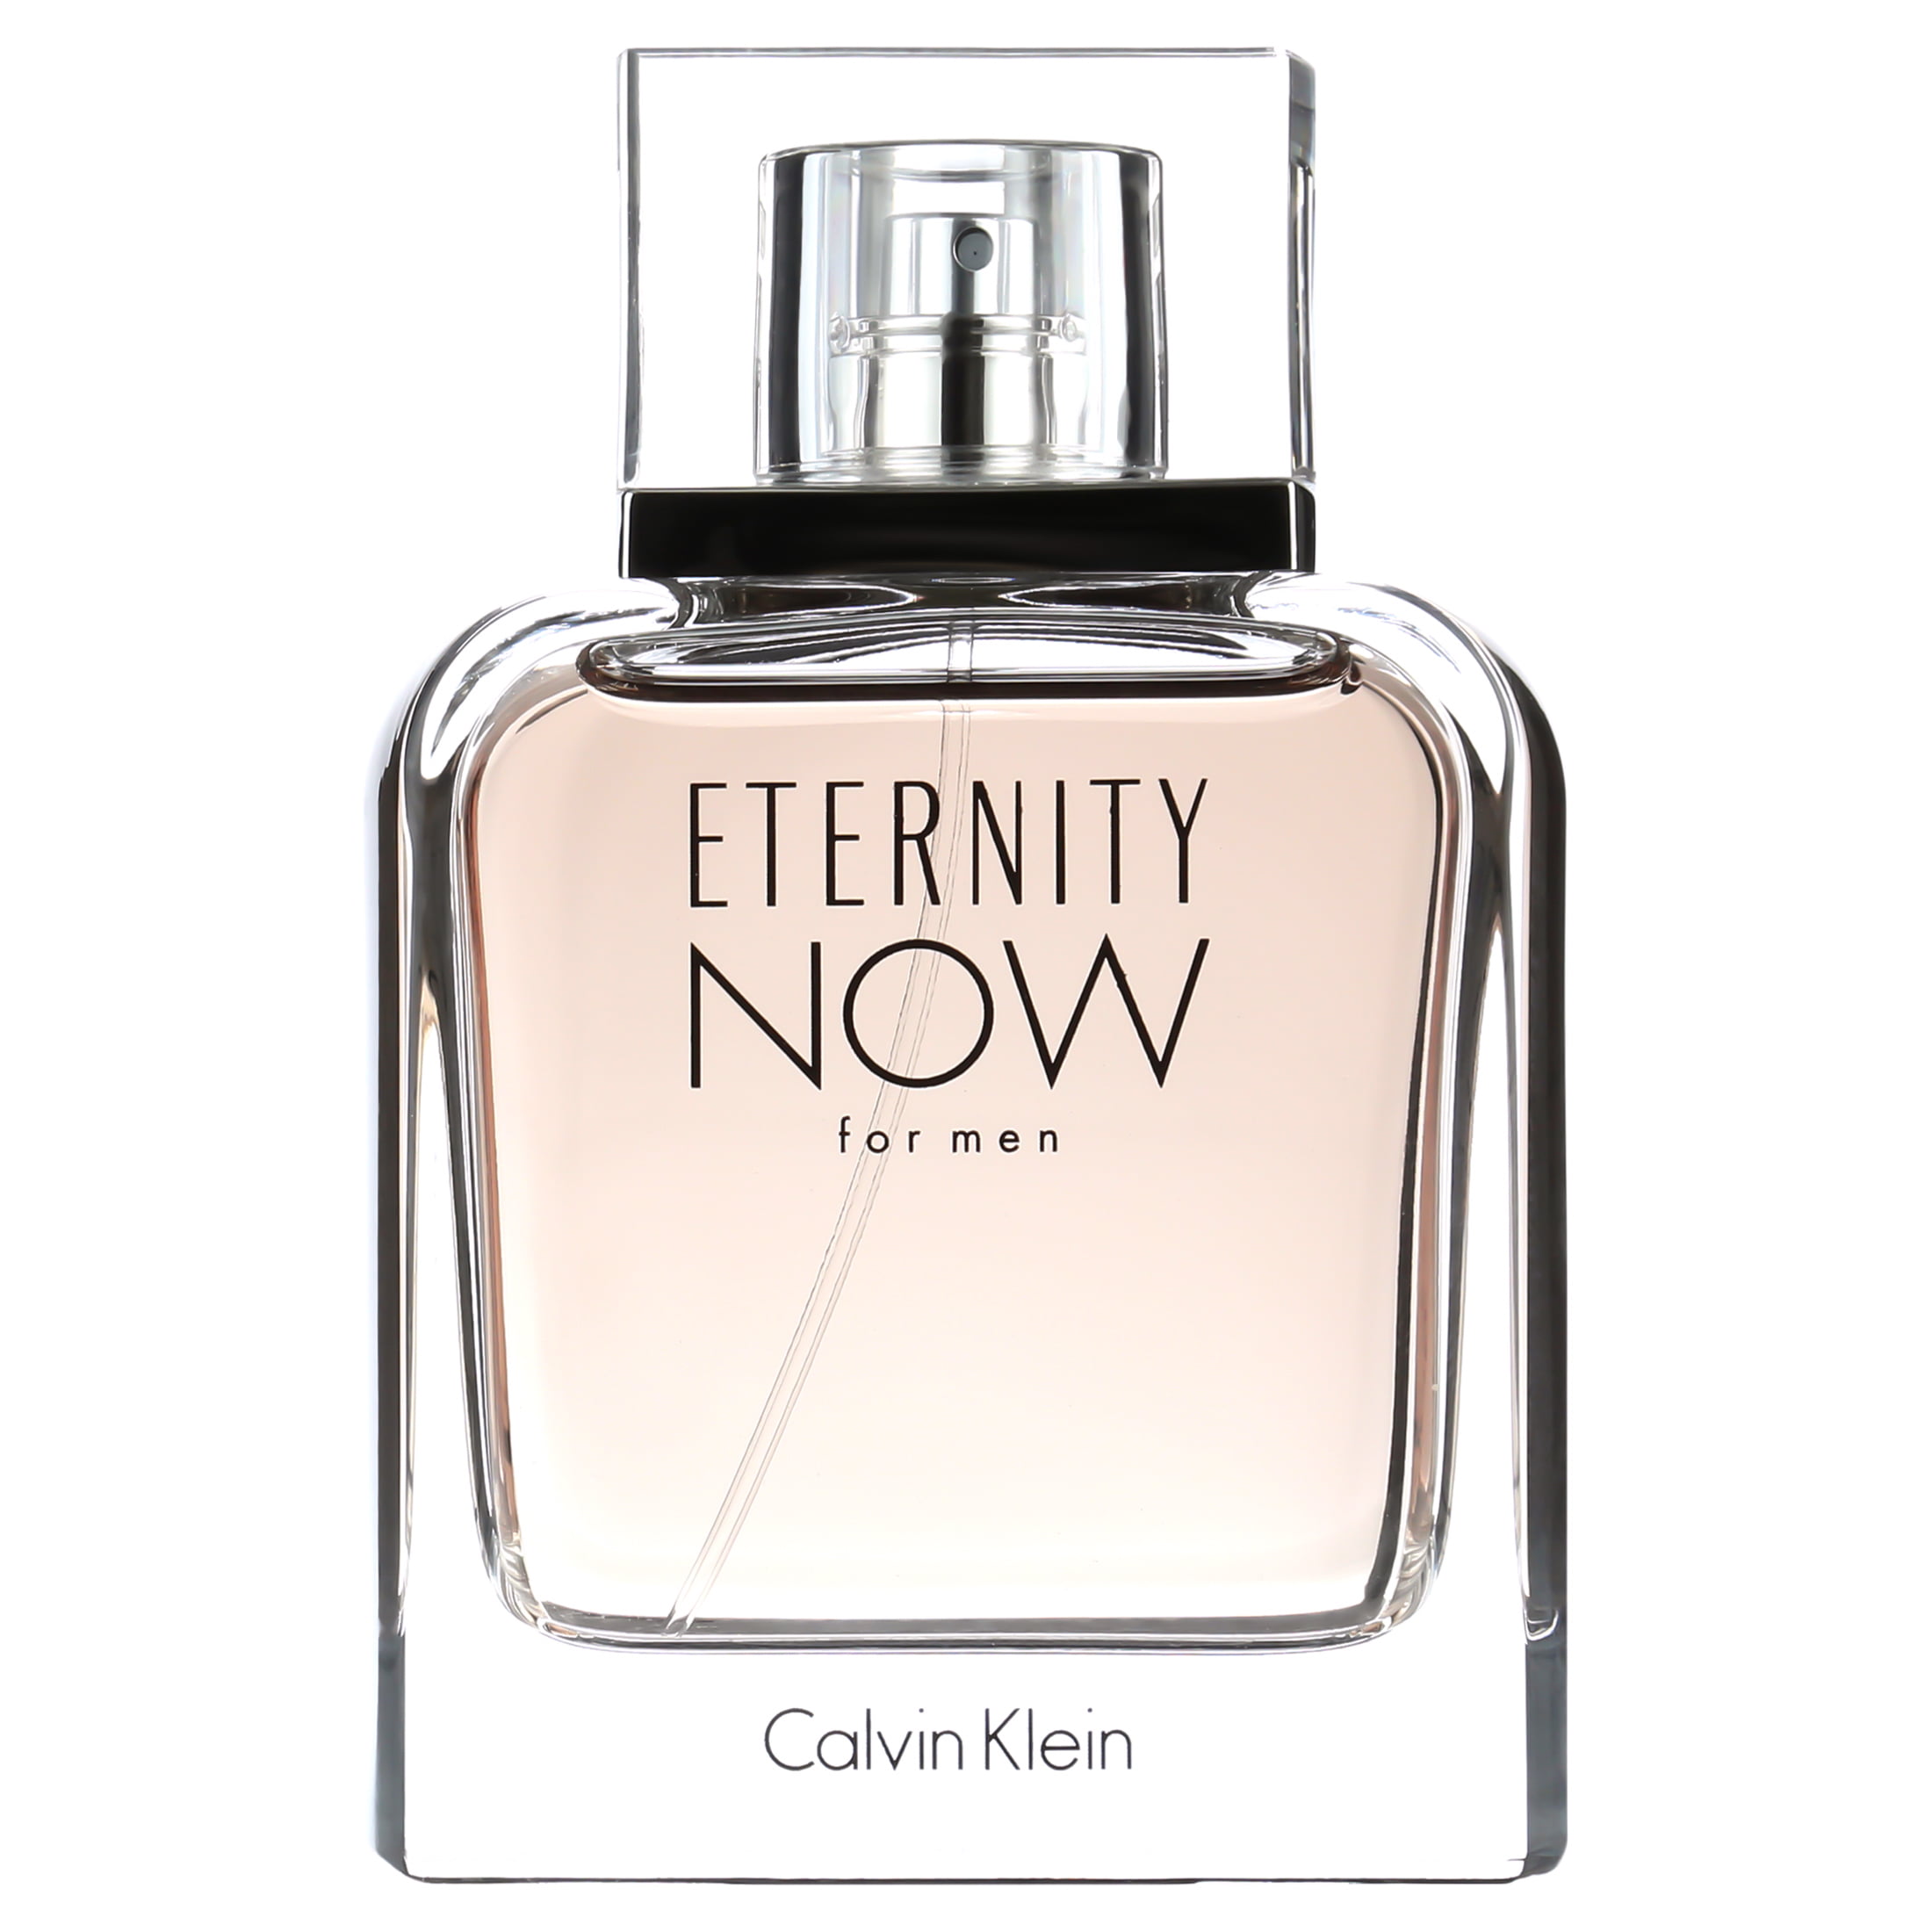 Calvin Klein Eternity Now Eau De Toilette Spray, Cologne for Men,  Oz -  